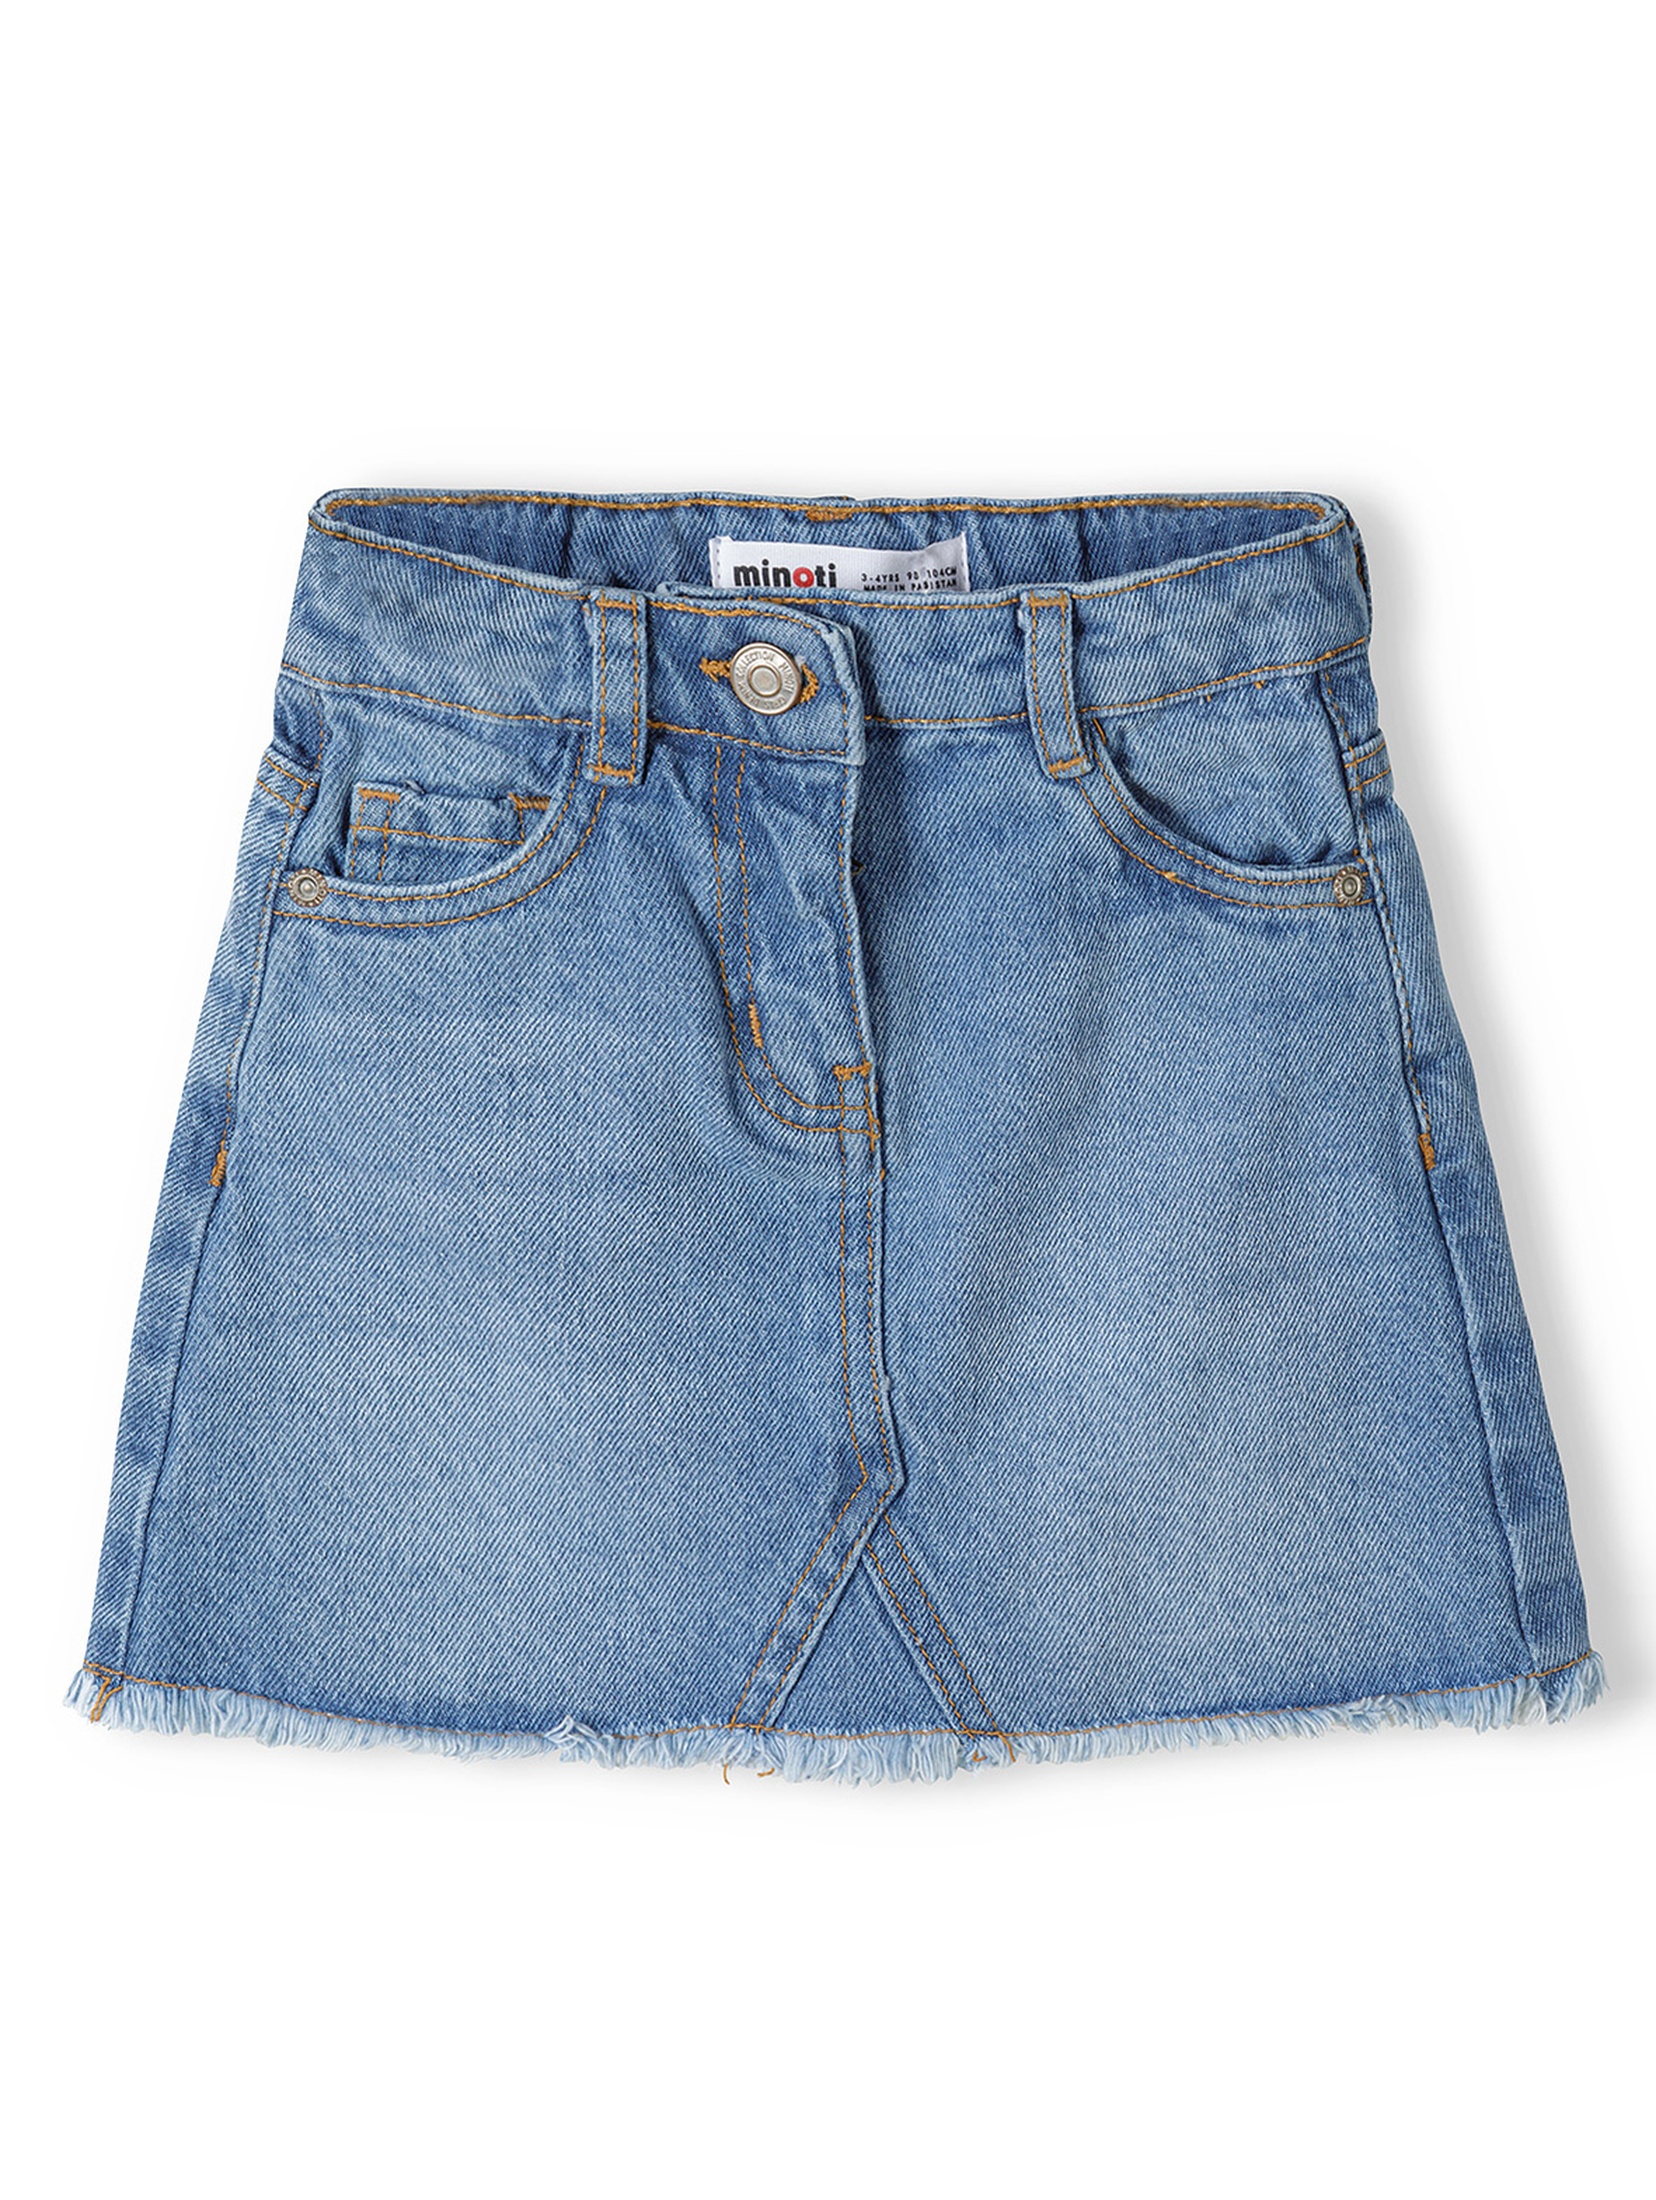 Jeansowa spódniczka krótka niebieska dla niemowlaka